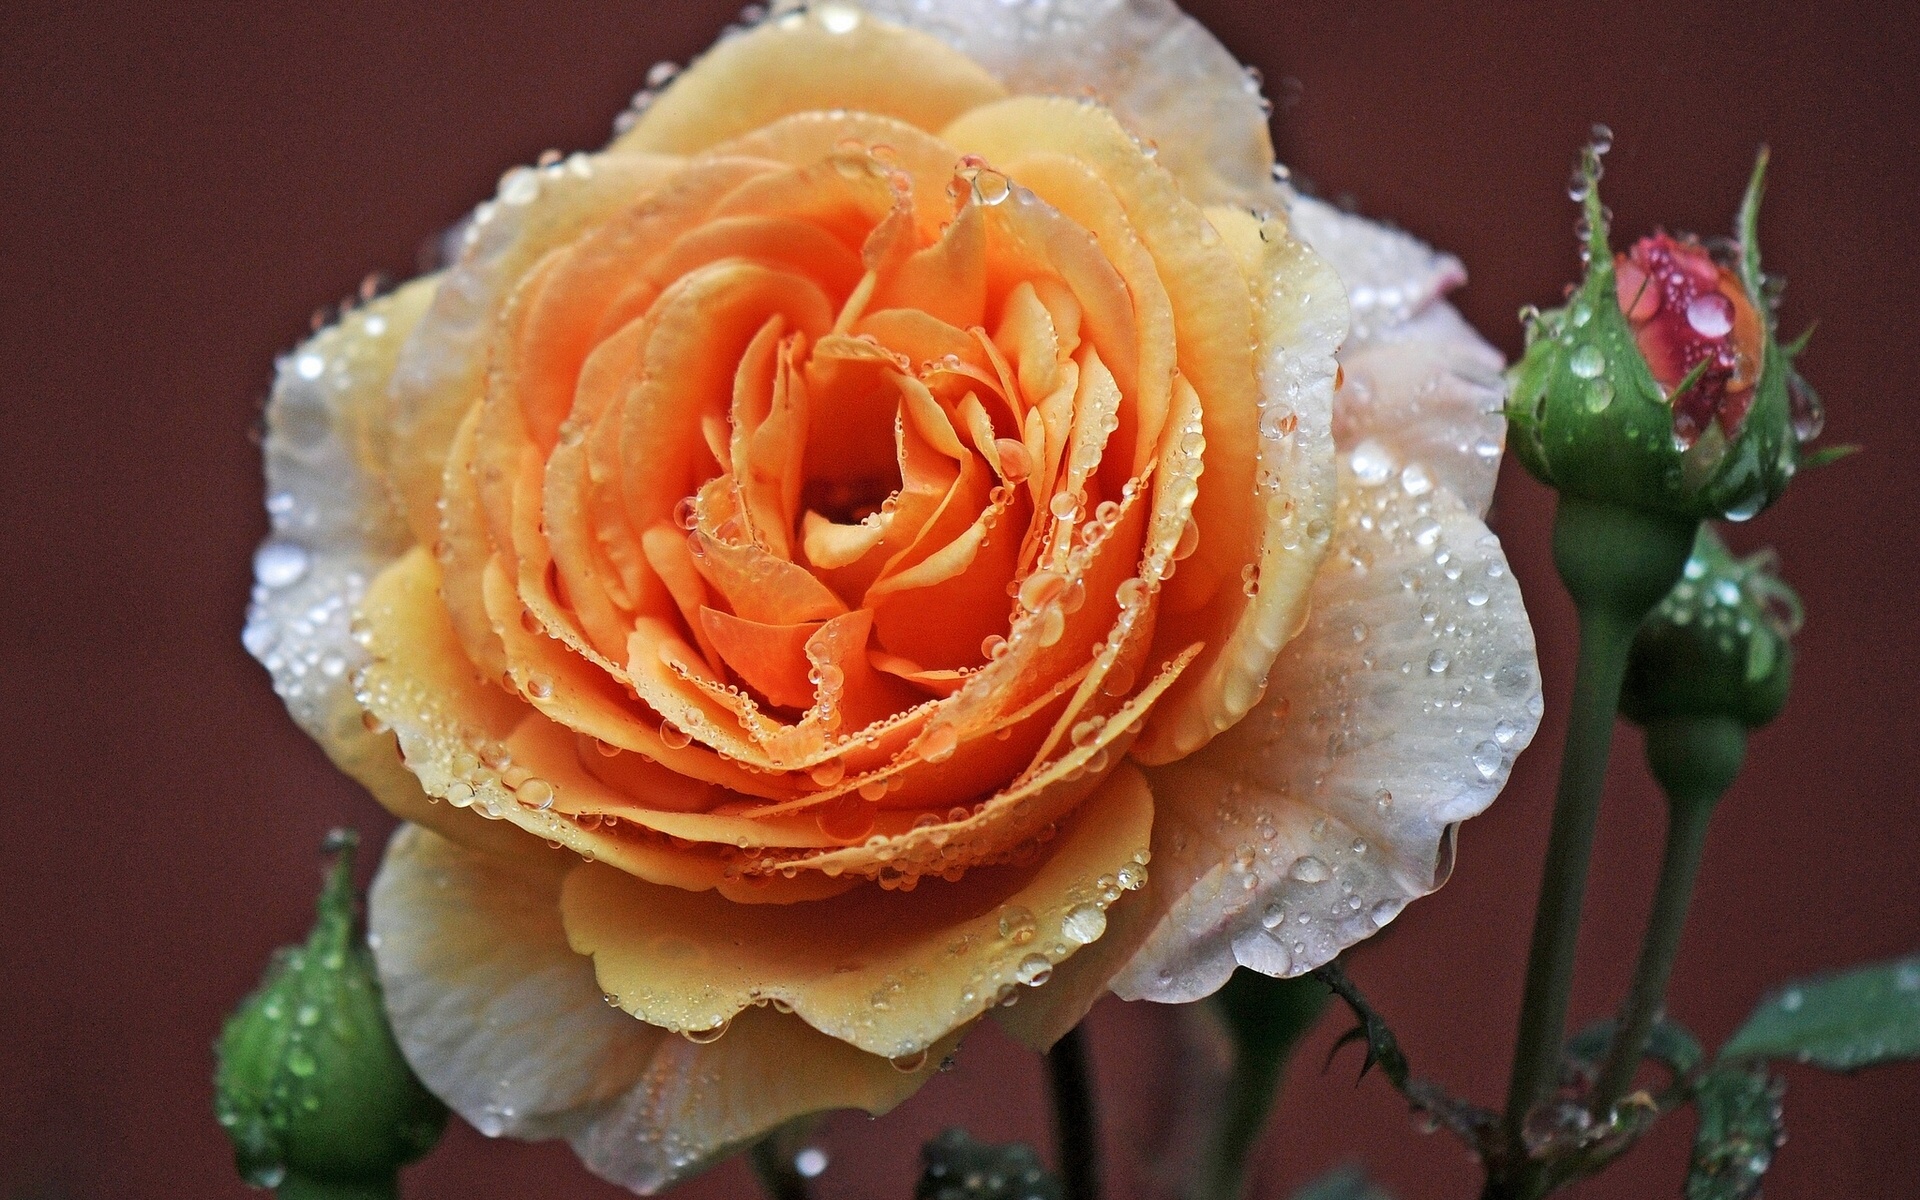 earth, rose, bud, flower, orange flower, flowers Full HD